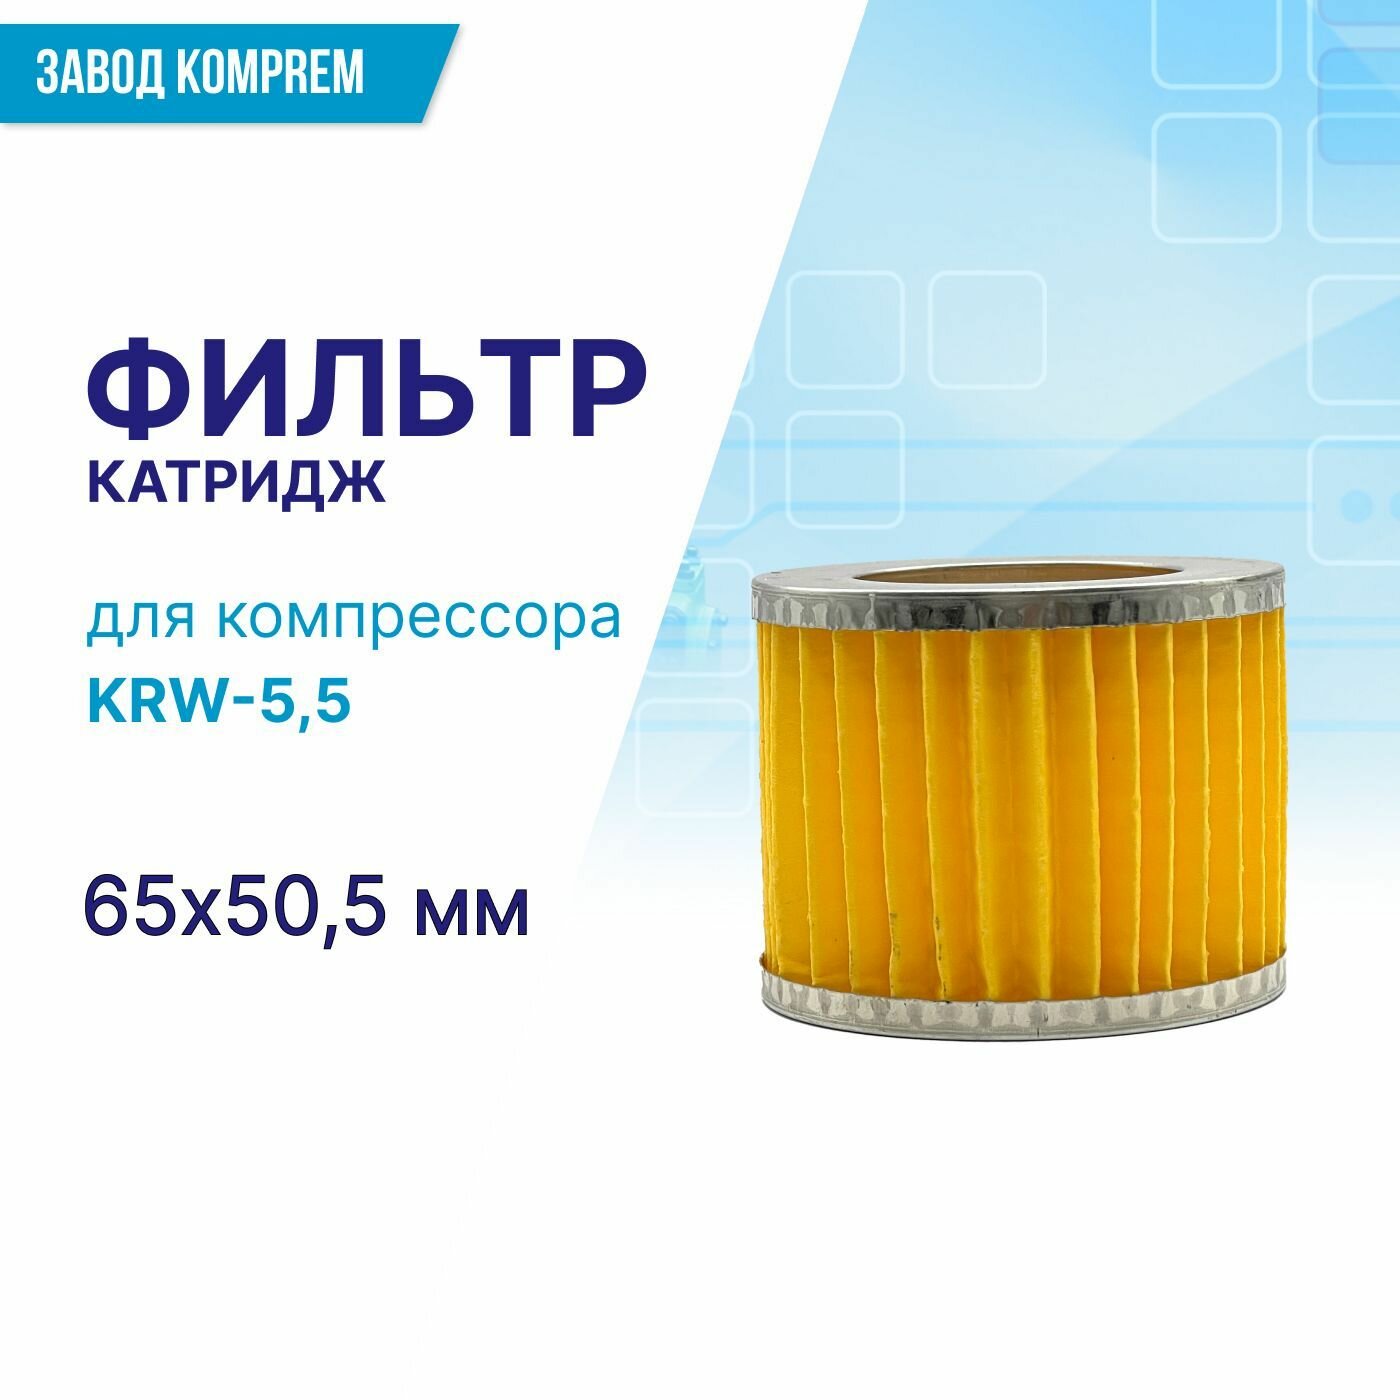 Фильтр (картридж) 65 мм х 50.5 мм для компрессора KRW-55